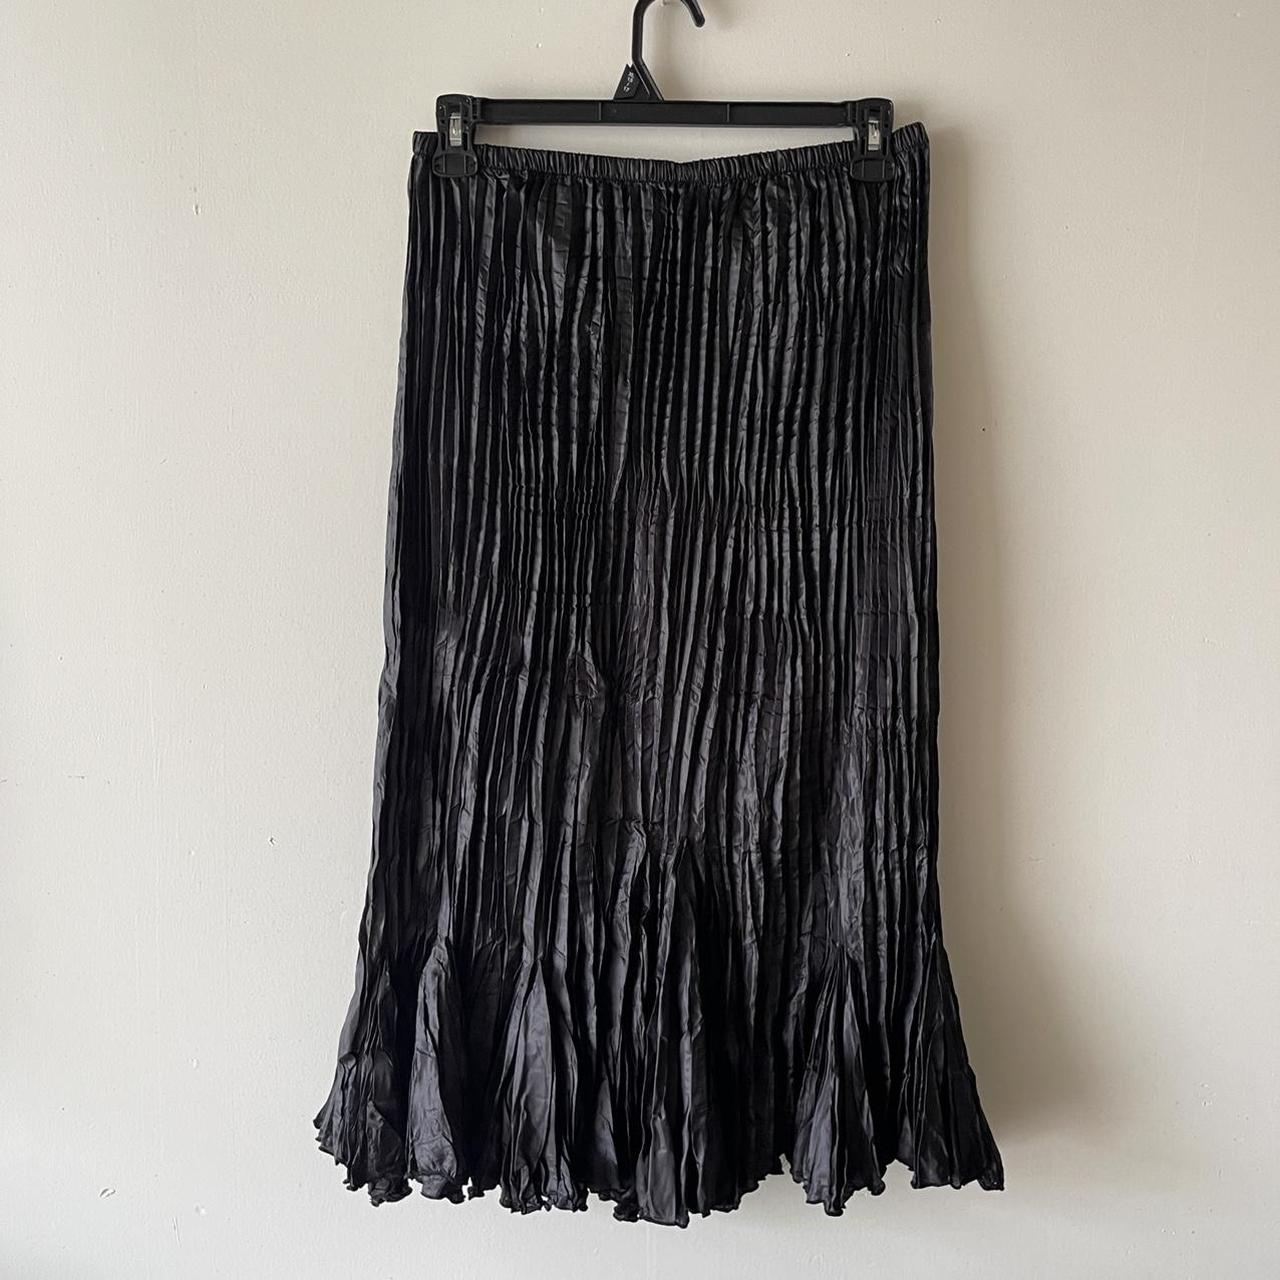 Product Image 3 - Zashi ruffle bottom skirt

Size L